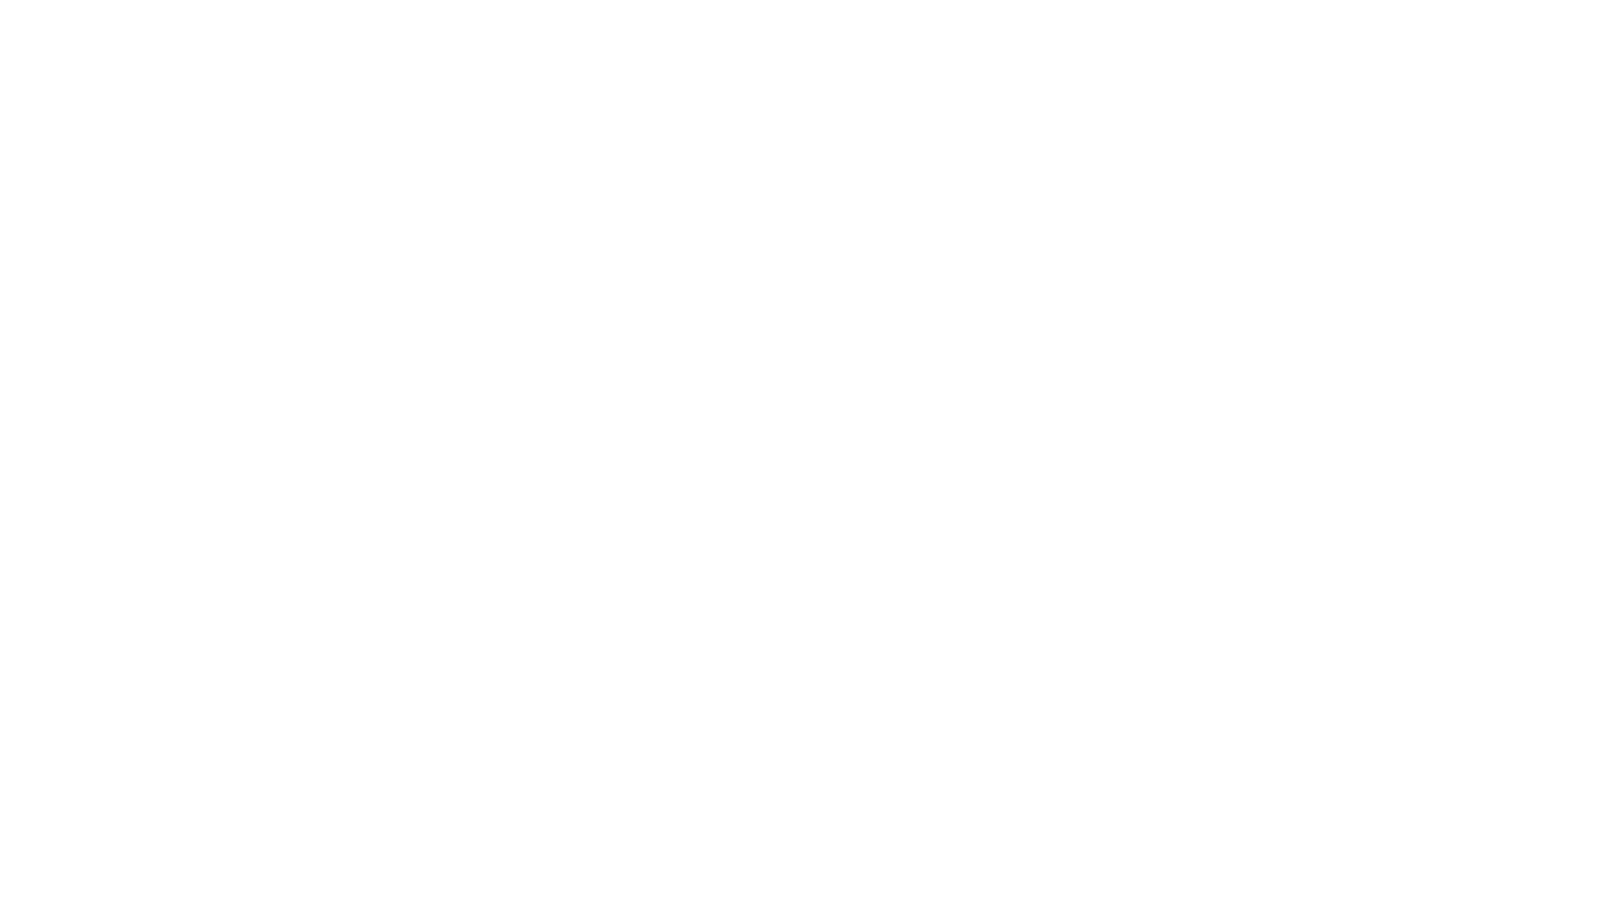 Ανακαλύψτε την εκπληκτική απεικόνιση των Πυλώνων της Δημιουργίας από το προηγμένο διαστημικό τηλεσκόπιο James Webb. Με νέα δεδομένα και θεαματικές φωτογραφίες, μάθετε περισσότερα για αυτό το ενδιαφέρον μέρος του διαστήματος. 

#ΔιαστημικόΤηλεσκόπιοJames #ΠυλώνεςΔημιουργίας #ΑπεικόνισηΔιαστημικήςΔημιουργίας #ΕπιστημονικήΑνακάλυψη #ΘεαματικέςΕικόνες #ΝέαΔεδομένα #ΔιαστημικήΕξερεύνηση #ΤηλεσκόπιοJames #Αστροφωτογραφία